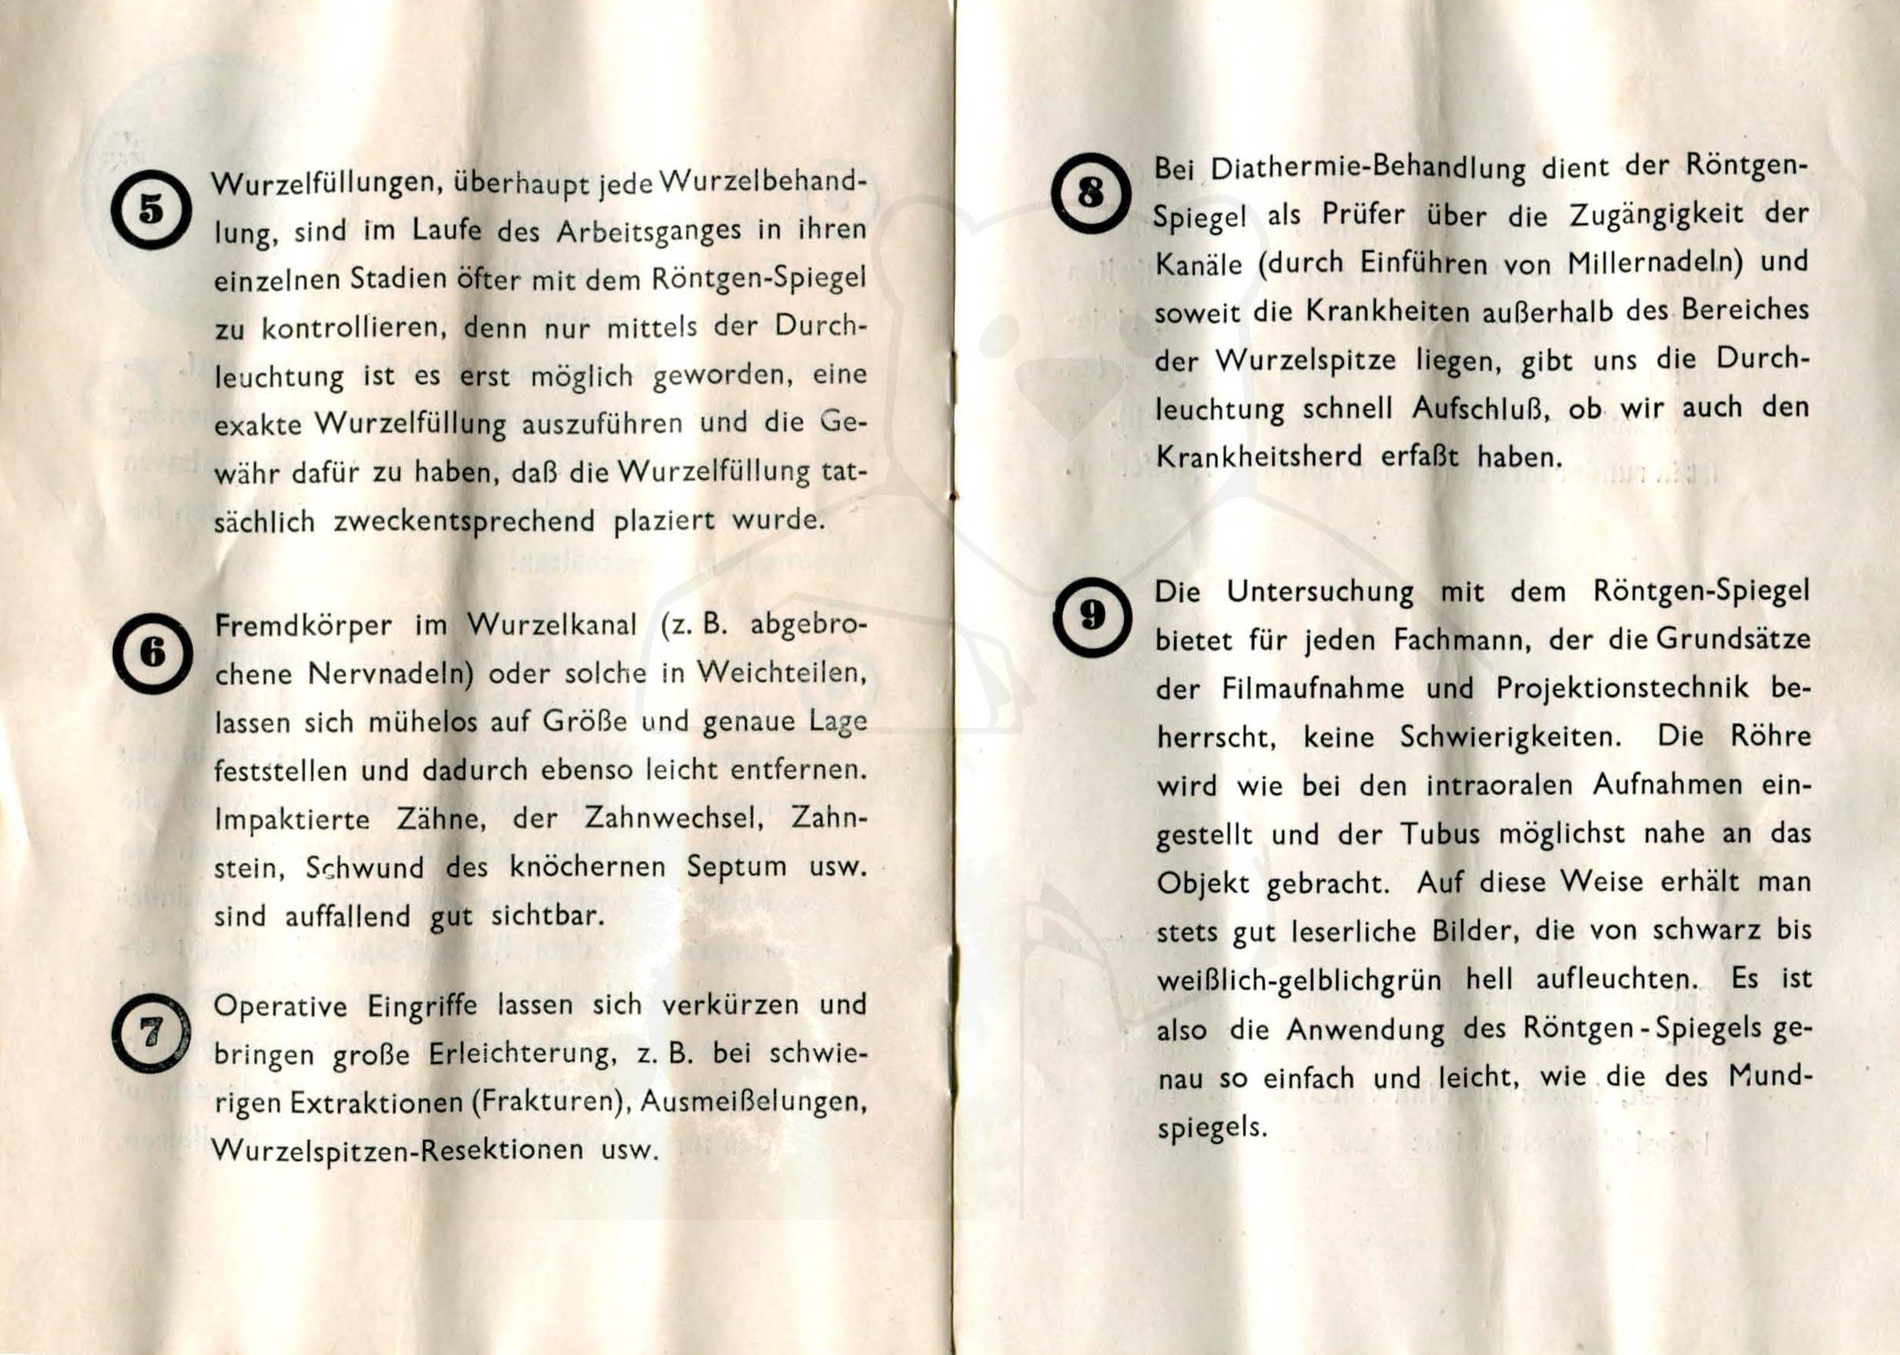 Röntgenspiegel nach Zeipper, Mitte der 1930'er Jahre - Anleitung, Seite 6 - 7